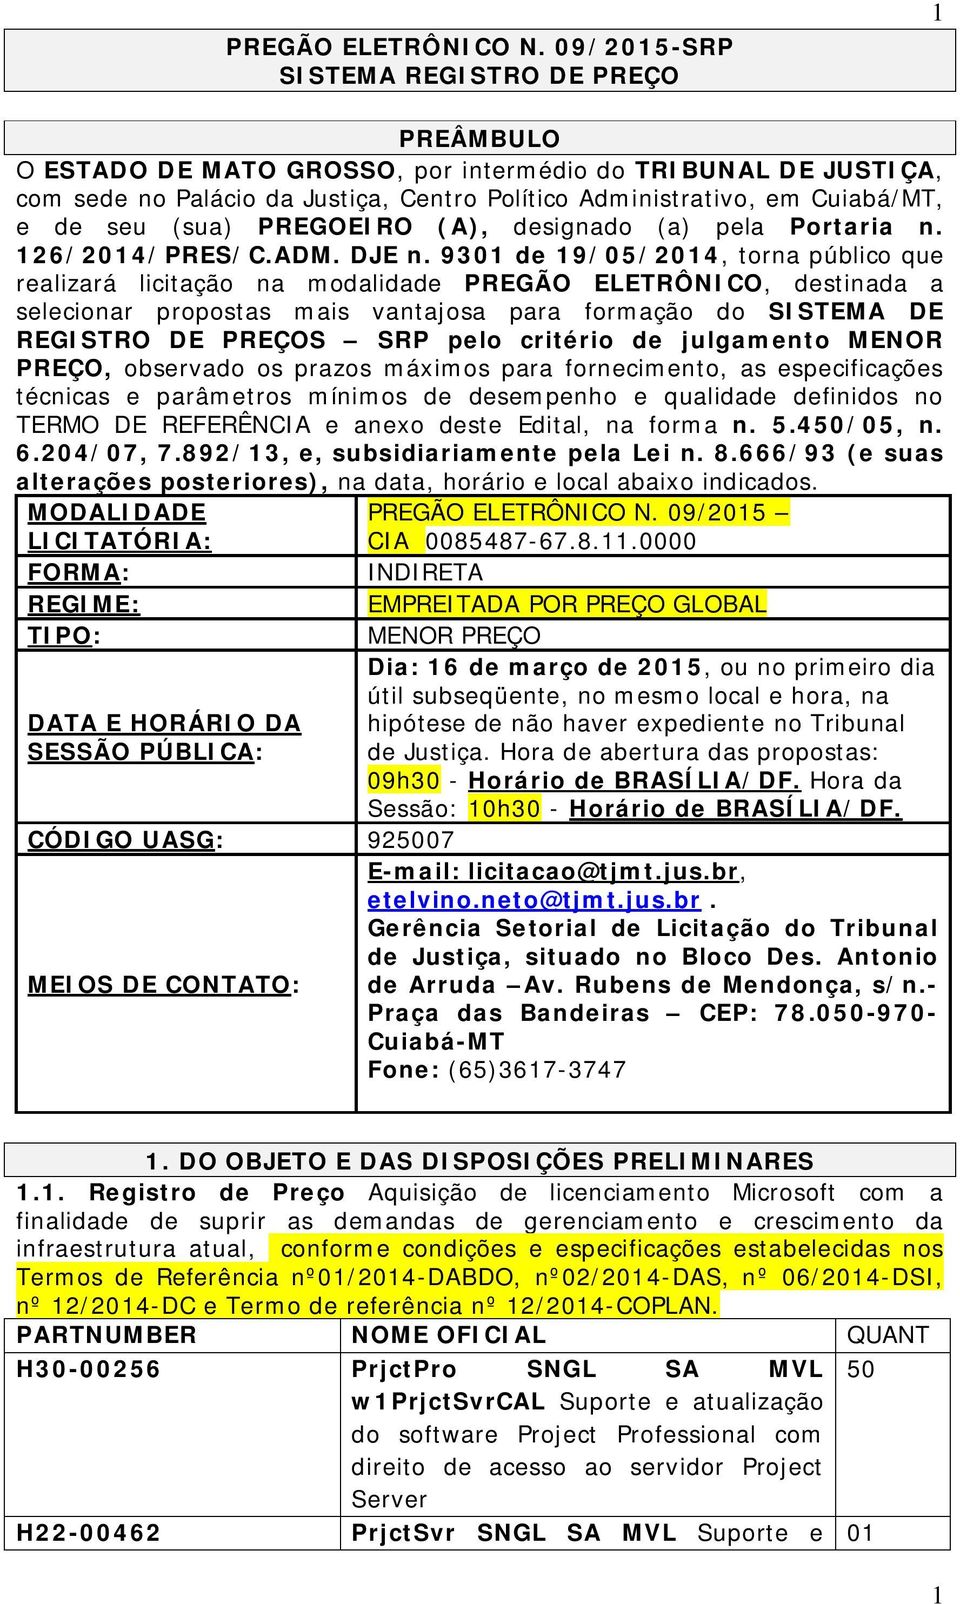 seu (sua) PREGOEIRO (A), designado (a) pela Portaria n. 126/2014/PRES/C.ADM. DJE n.